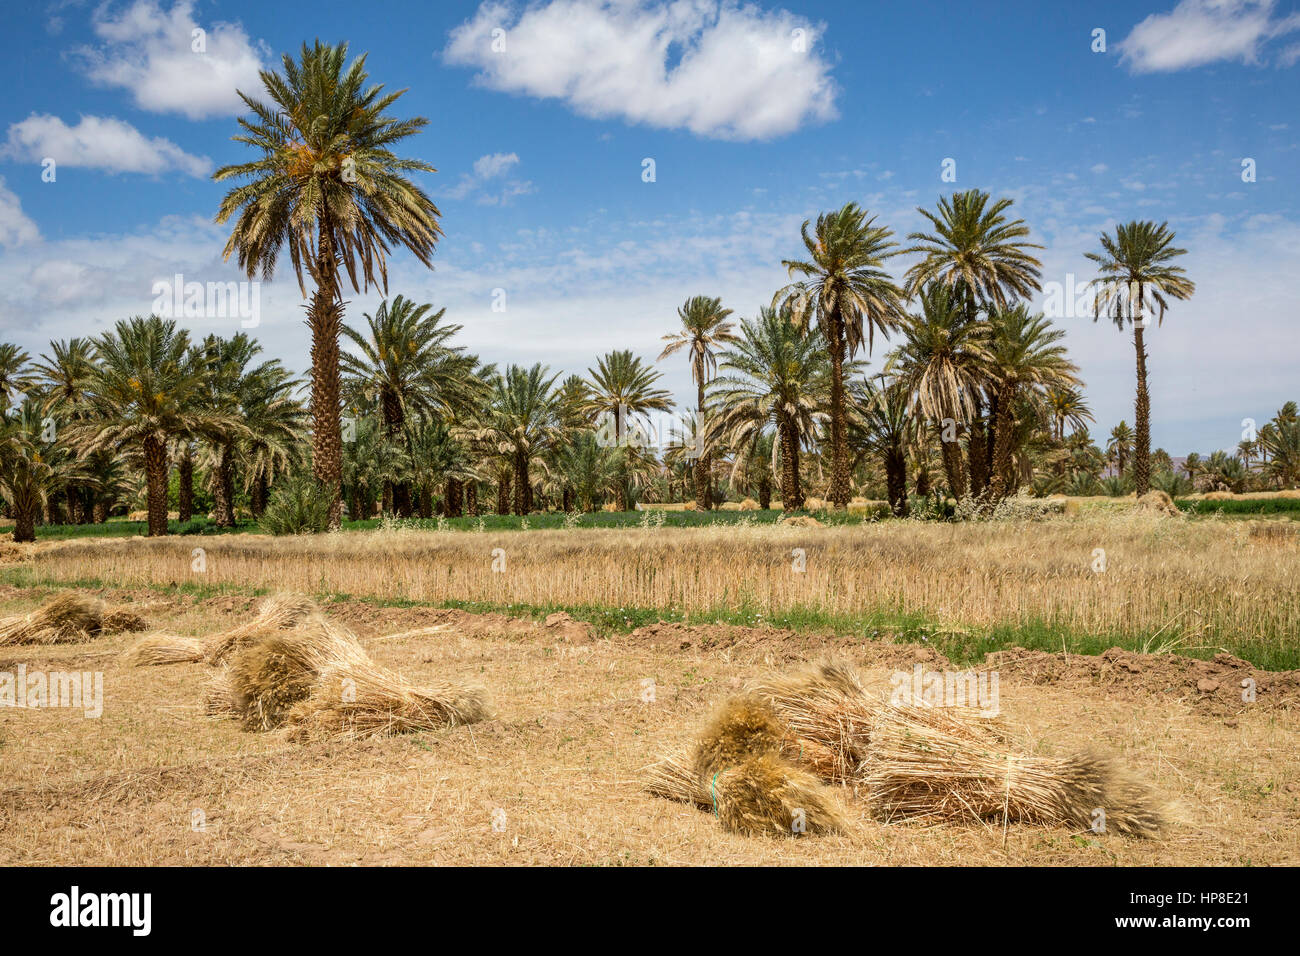 Alnif, provincia de Tinghir, Marruecos. Cosechado fardos de trigo en espera de ser recogidos. Foto de stock